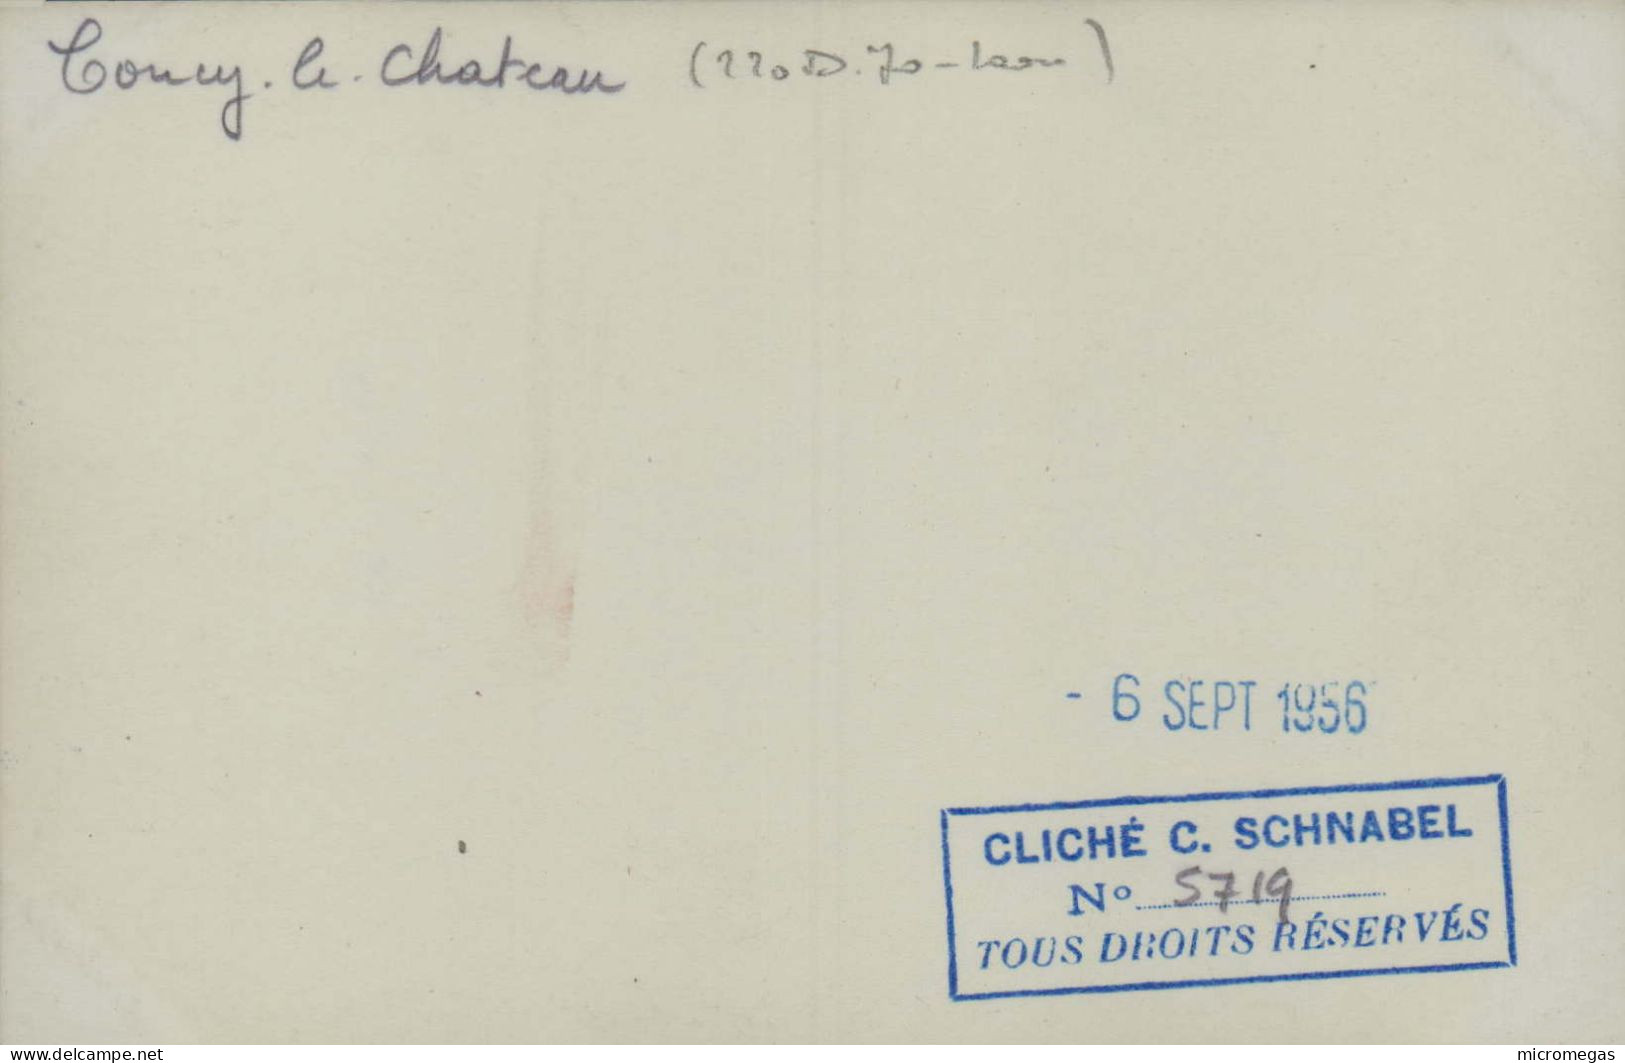 COUCY-le-CHÂTEAU - 220-D-70 Laon - Cliché C. Schnabel, 6 Sept. 1956 - Trenes